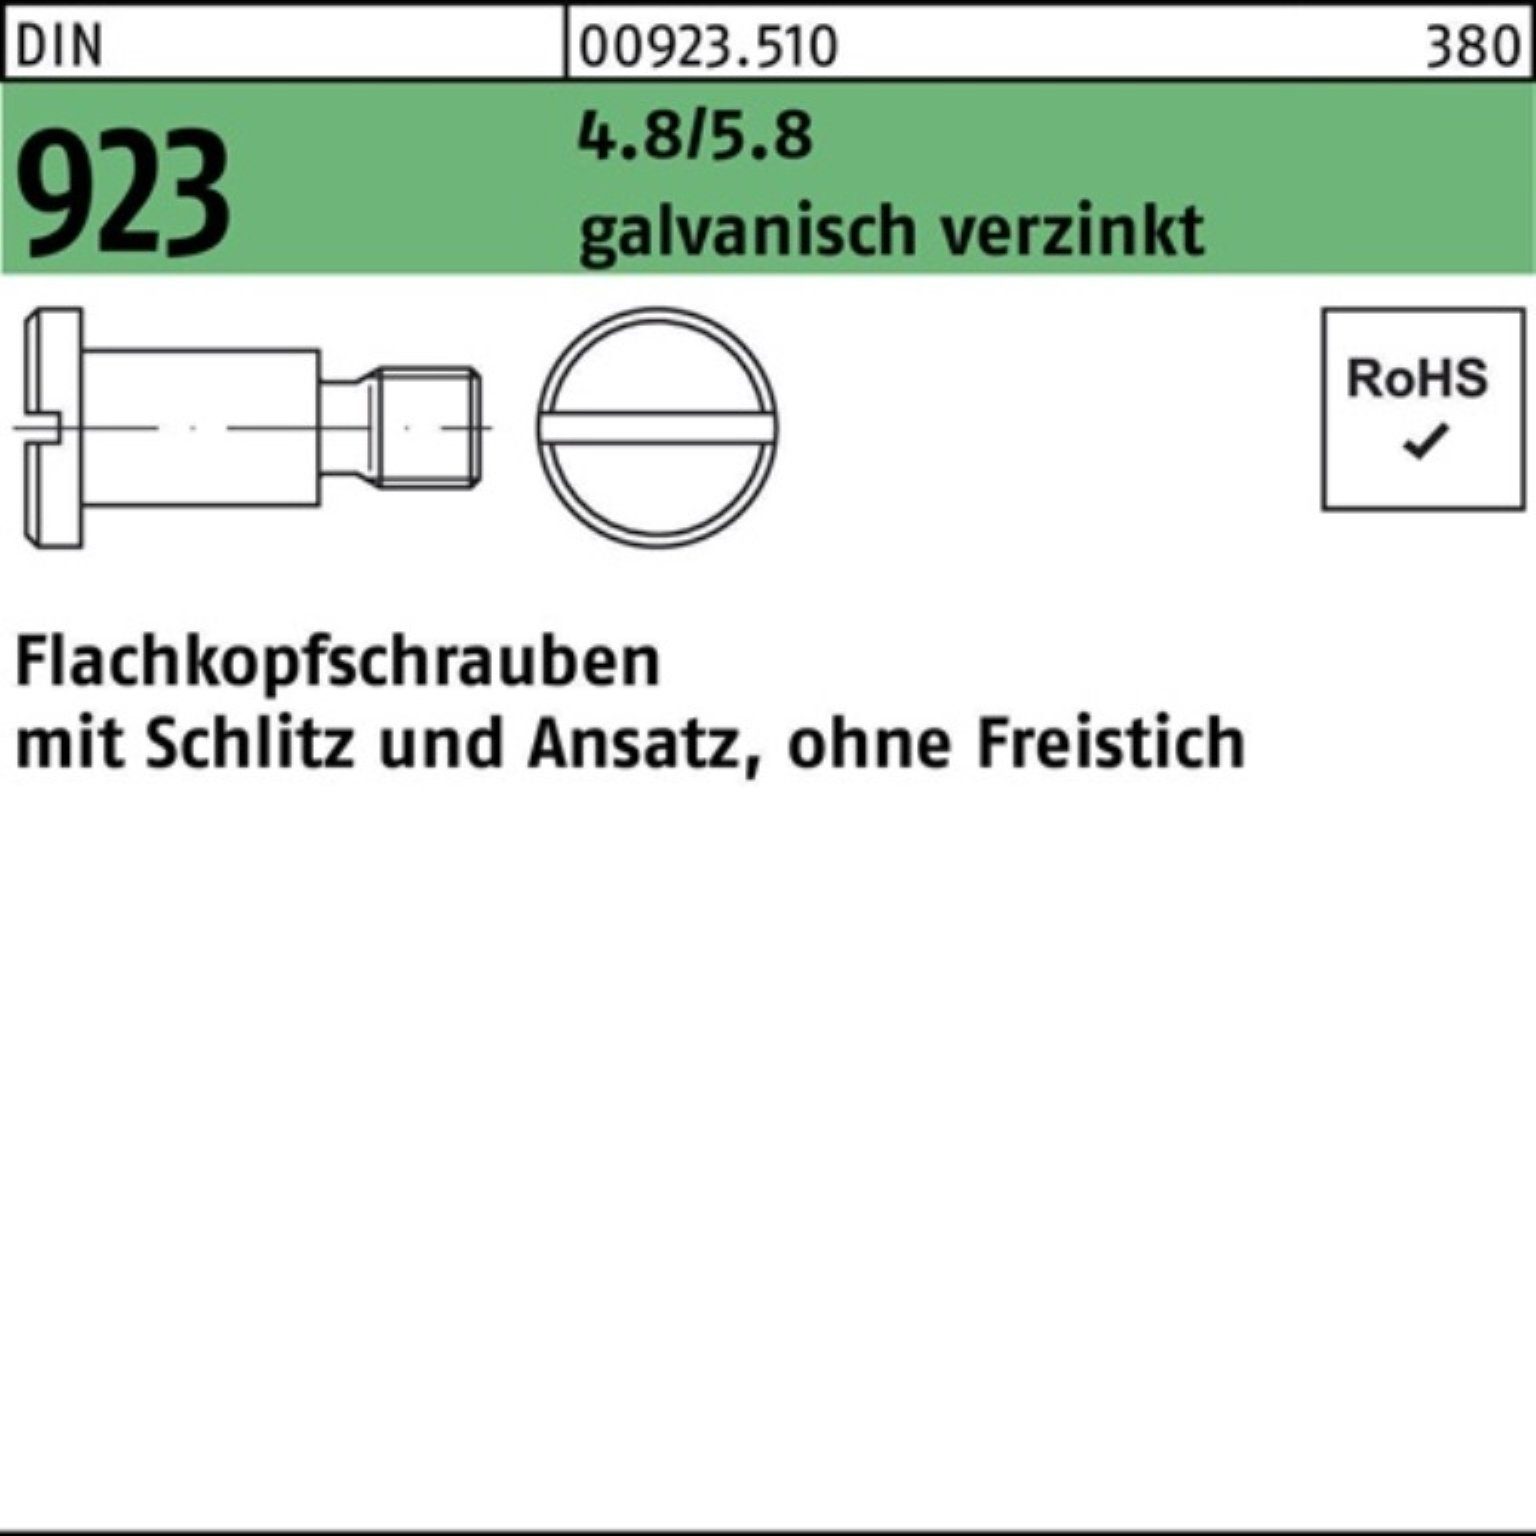 Reyher Schraube 100er Schlitz/Ansatz g 4.8/5.8 Pack M6x3x9,0 923 DIN Flachkopfschraube